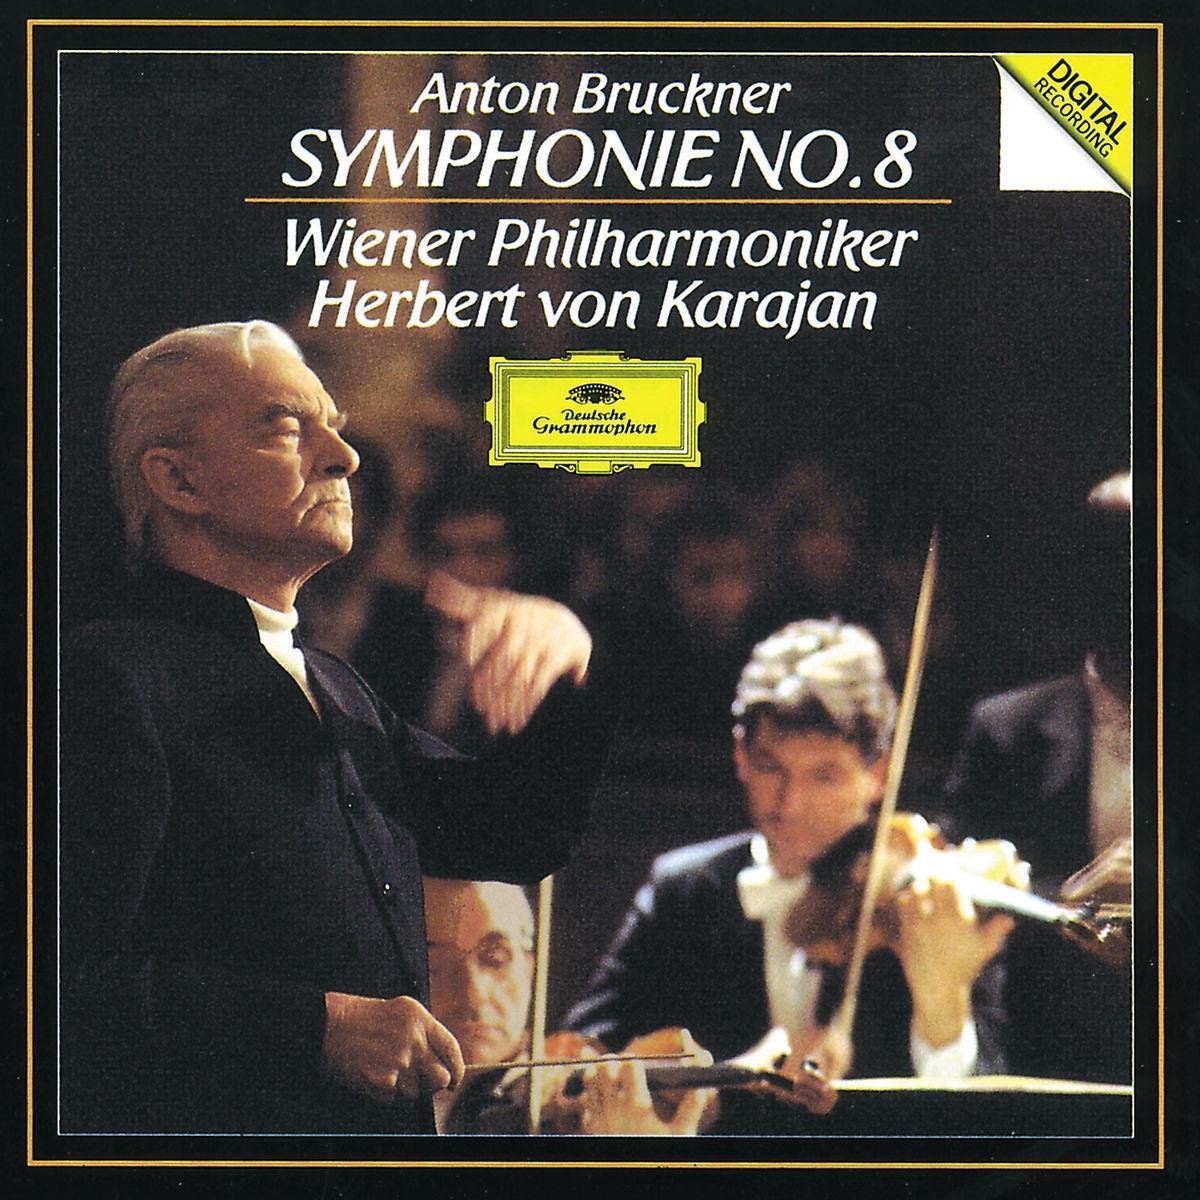 Bruckner: Symphony No. 8 | Anton Bruckner, Wiener Philharmoniker, Herbert von Karajan